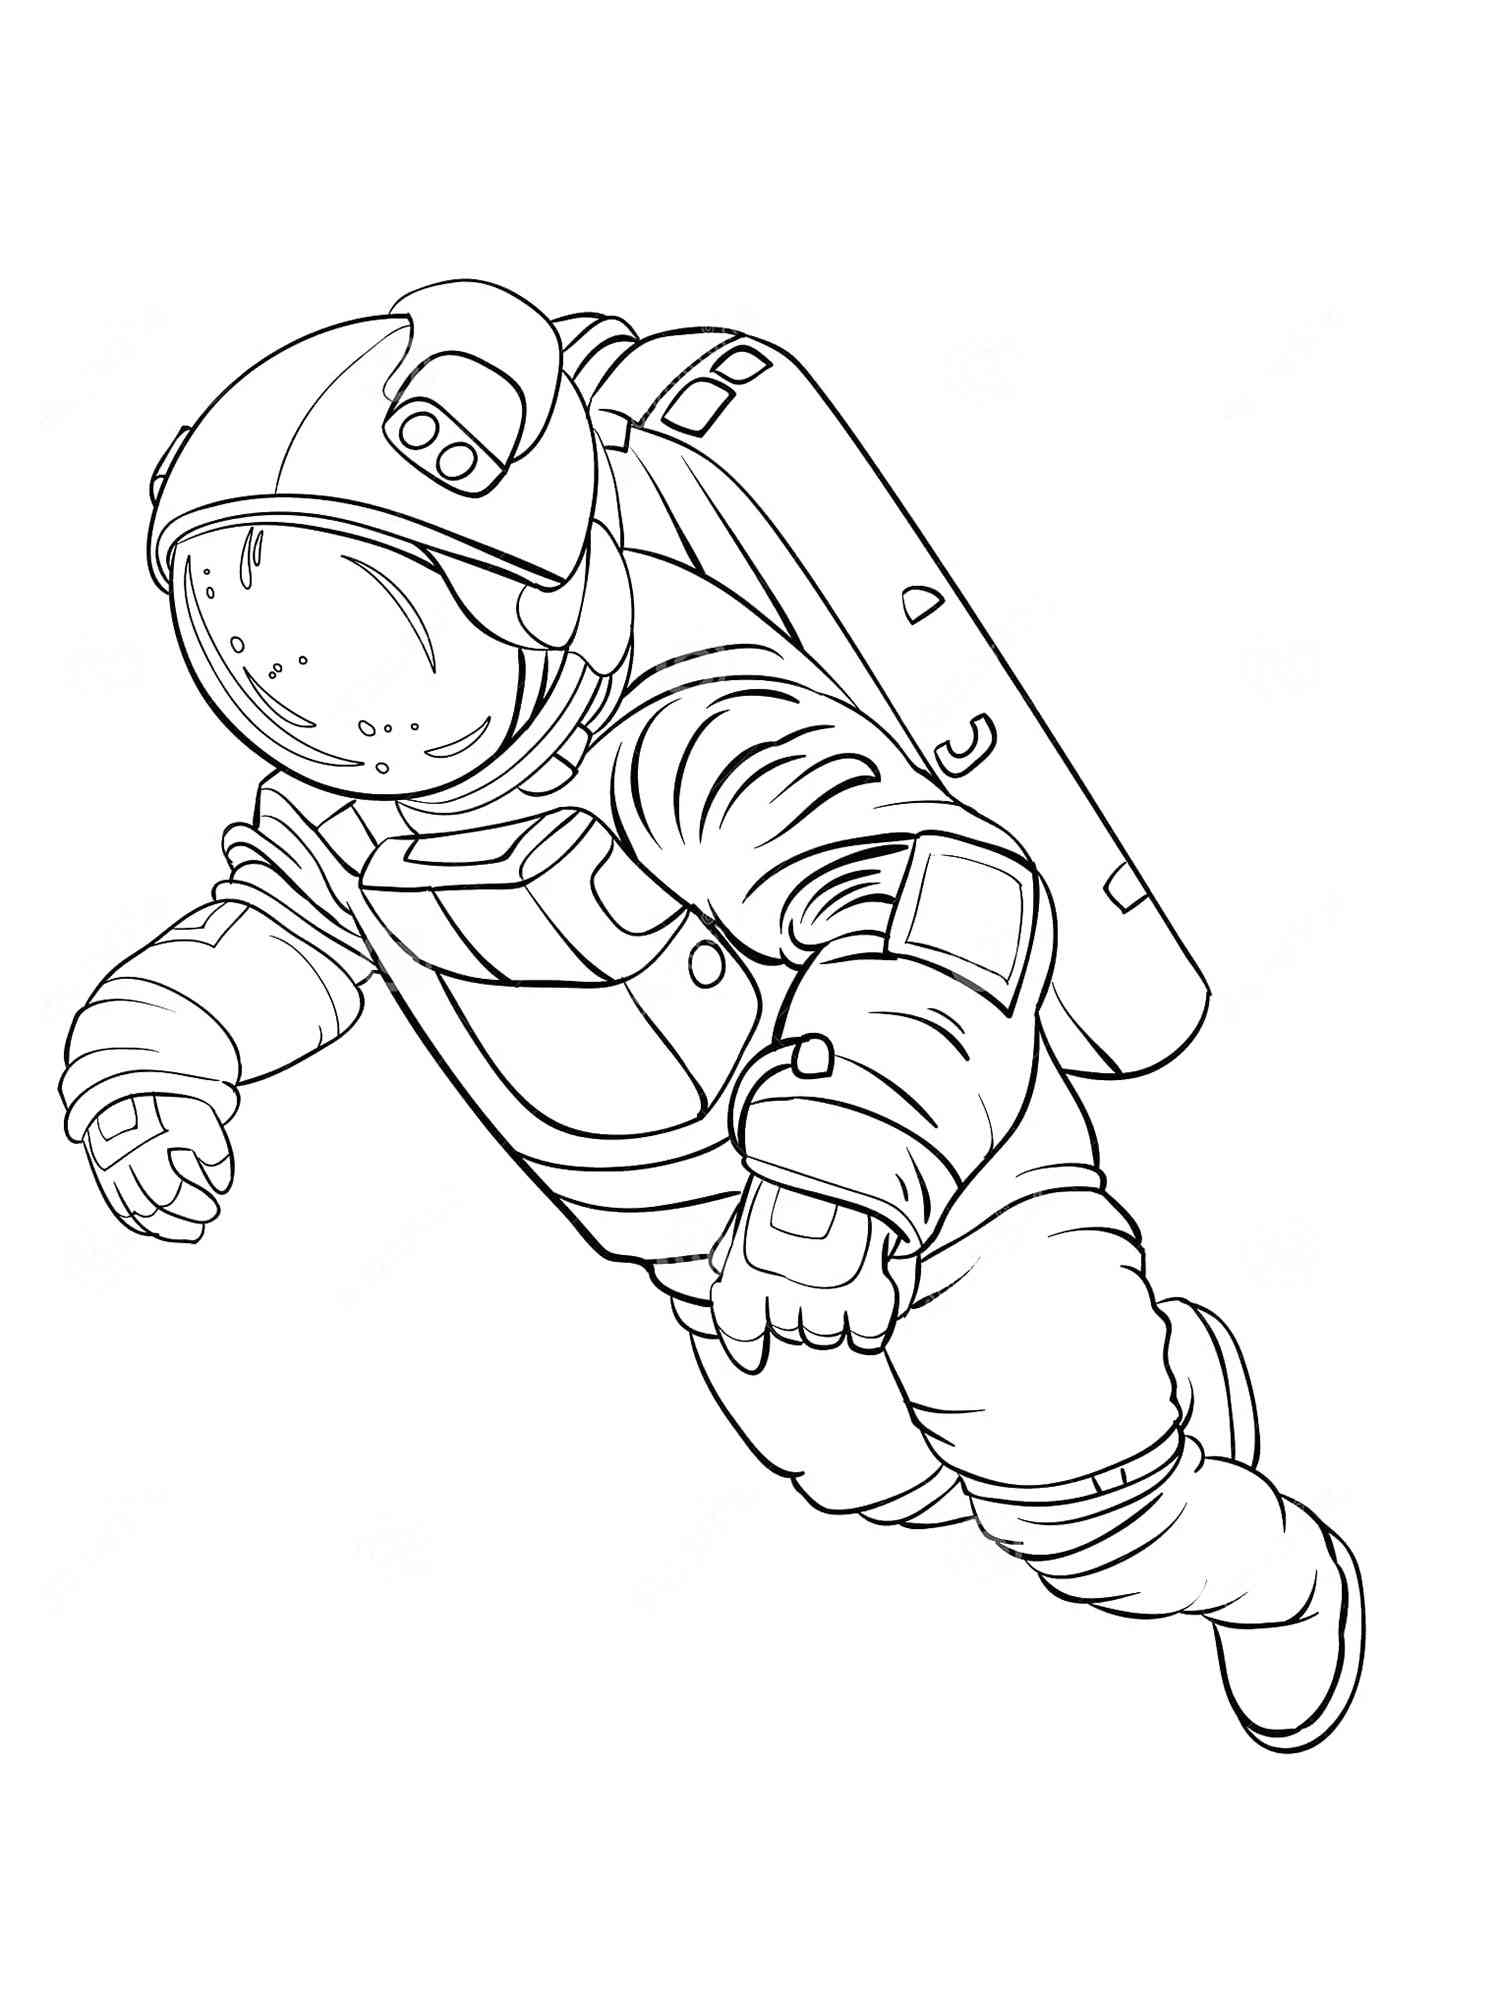 Как нарисовать скафандр. Космонавт раскраска для детей. Космос раскраска для детей. Раскраска Космонавта в скафандре для детей. Раскраска про космос и Космонавтов для детей.